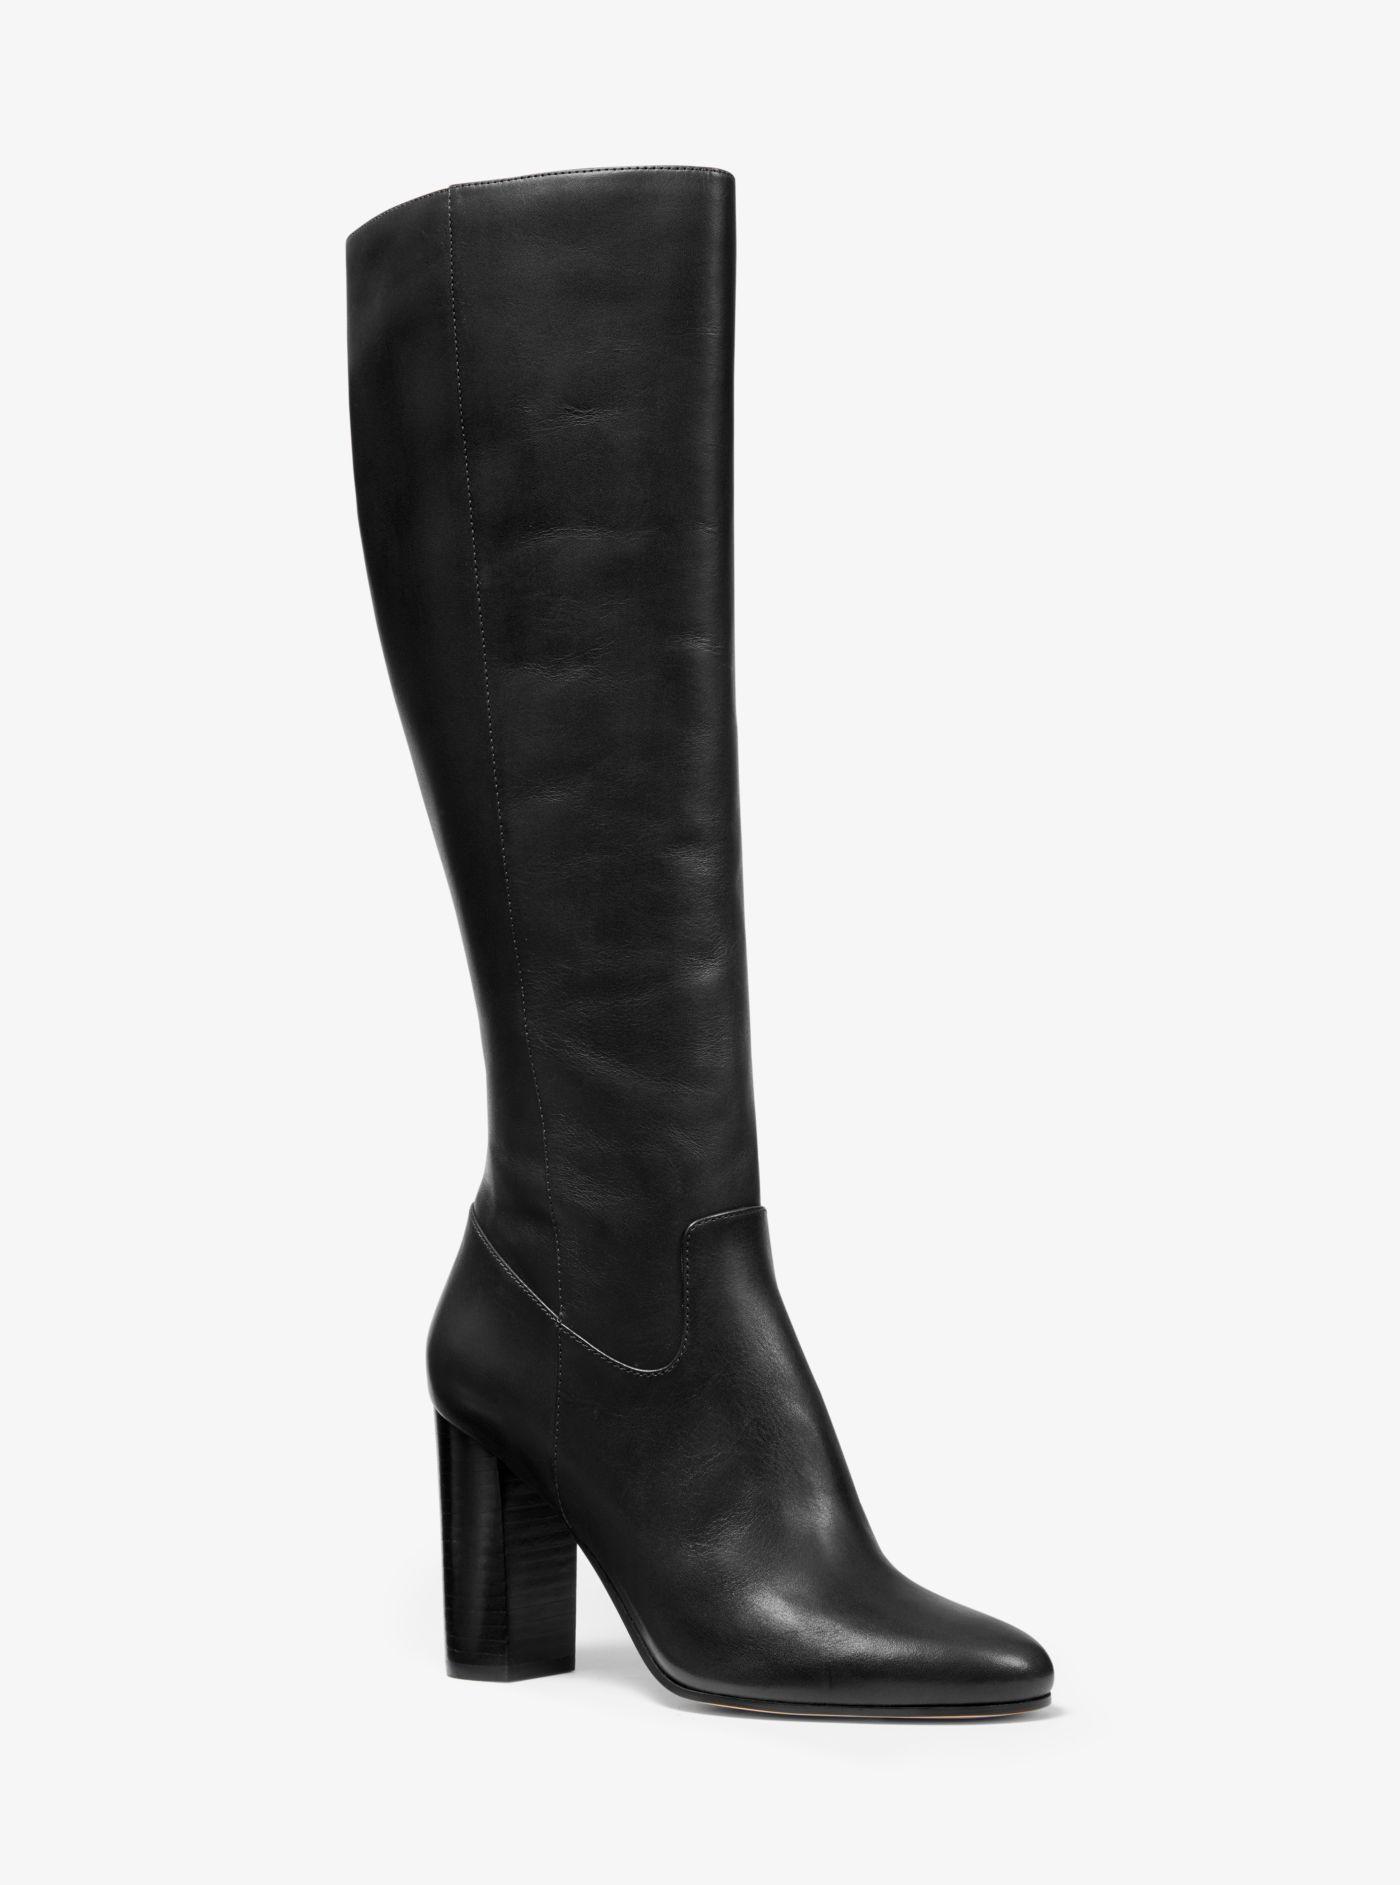 Michael Kors Lottie Leather Boot in Black | Lyst